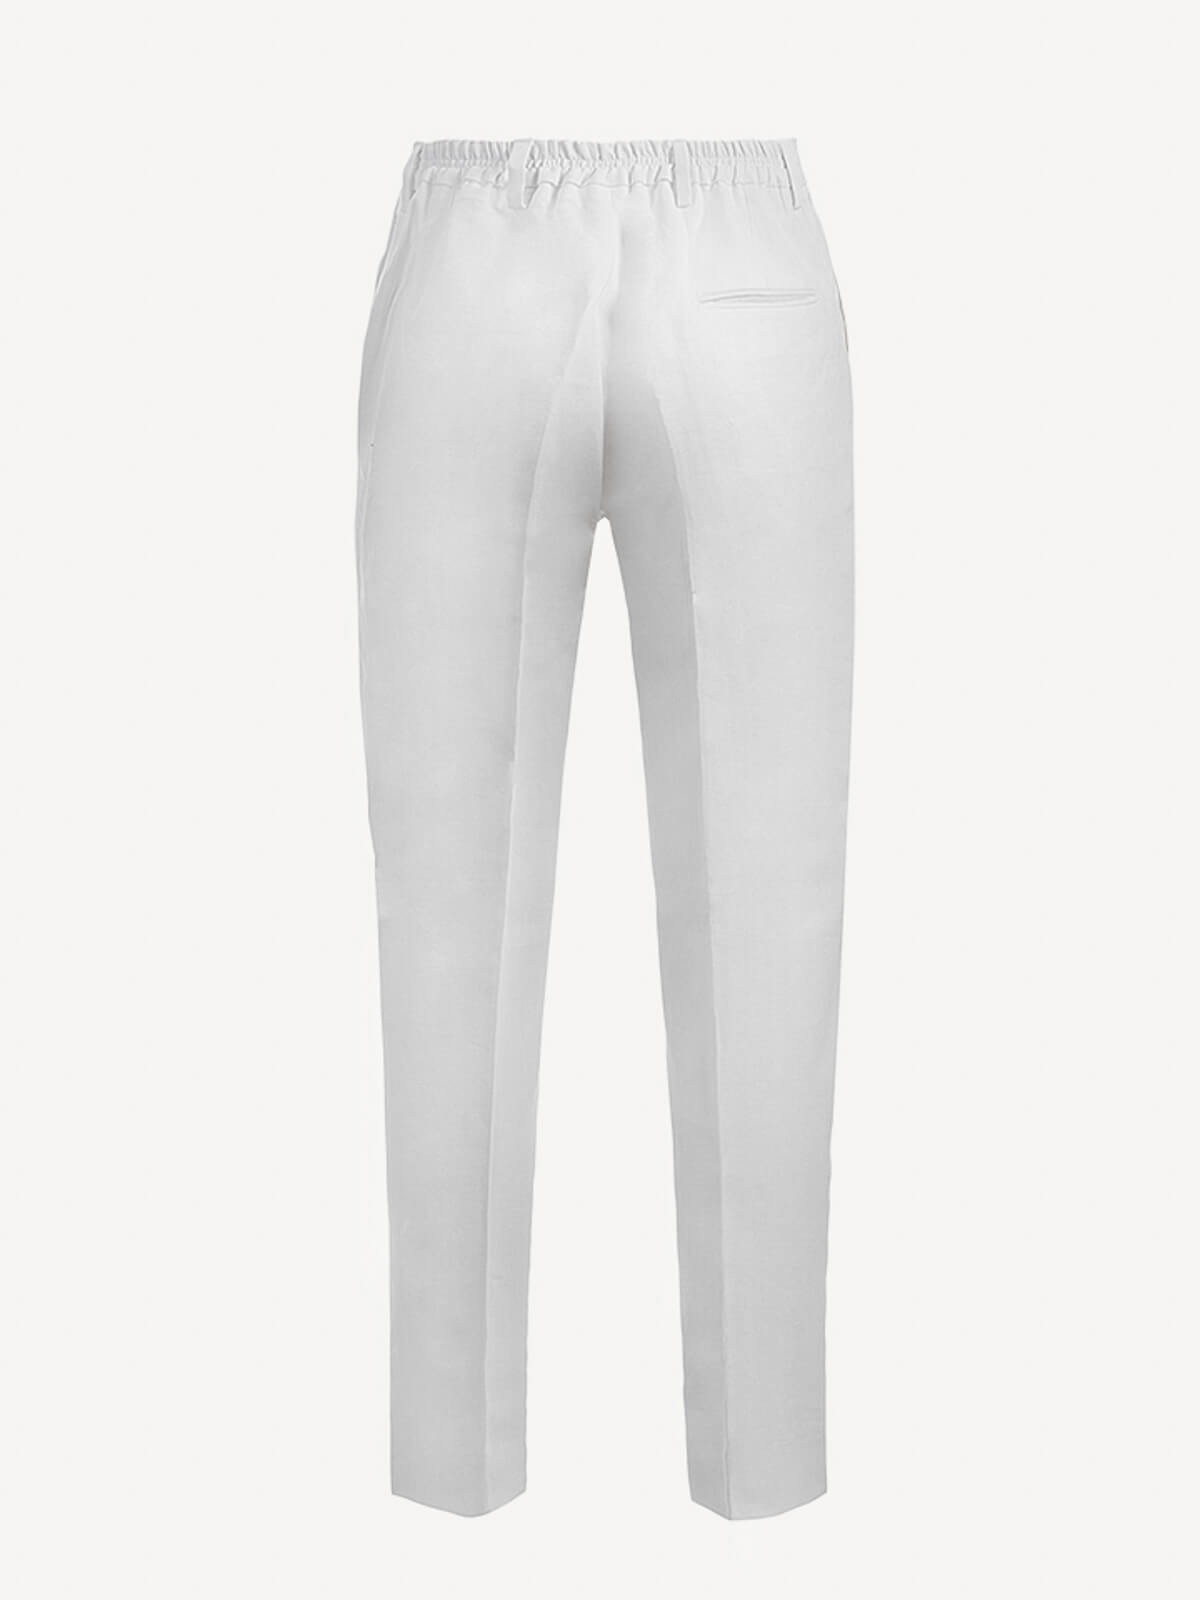 Pantalone Martin 100% Capri white linen pant back